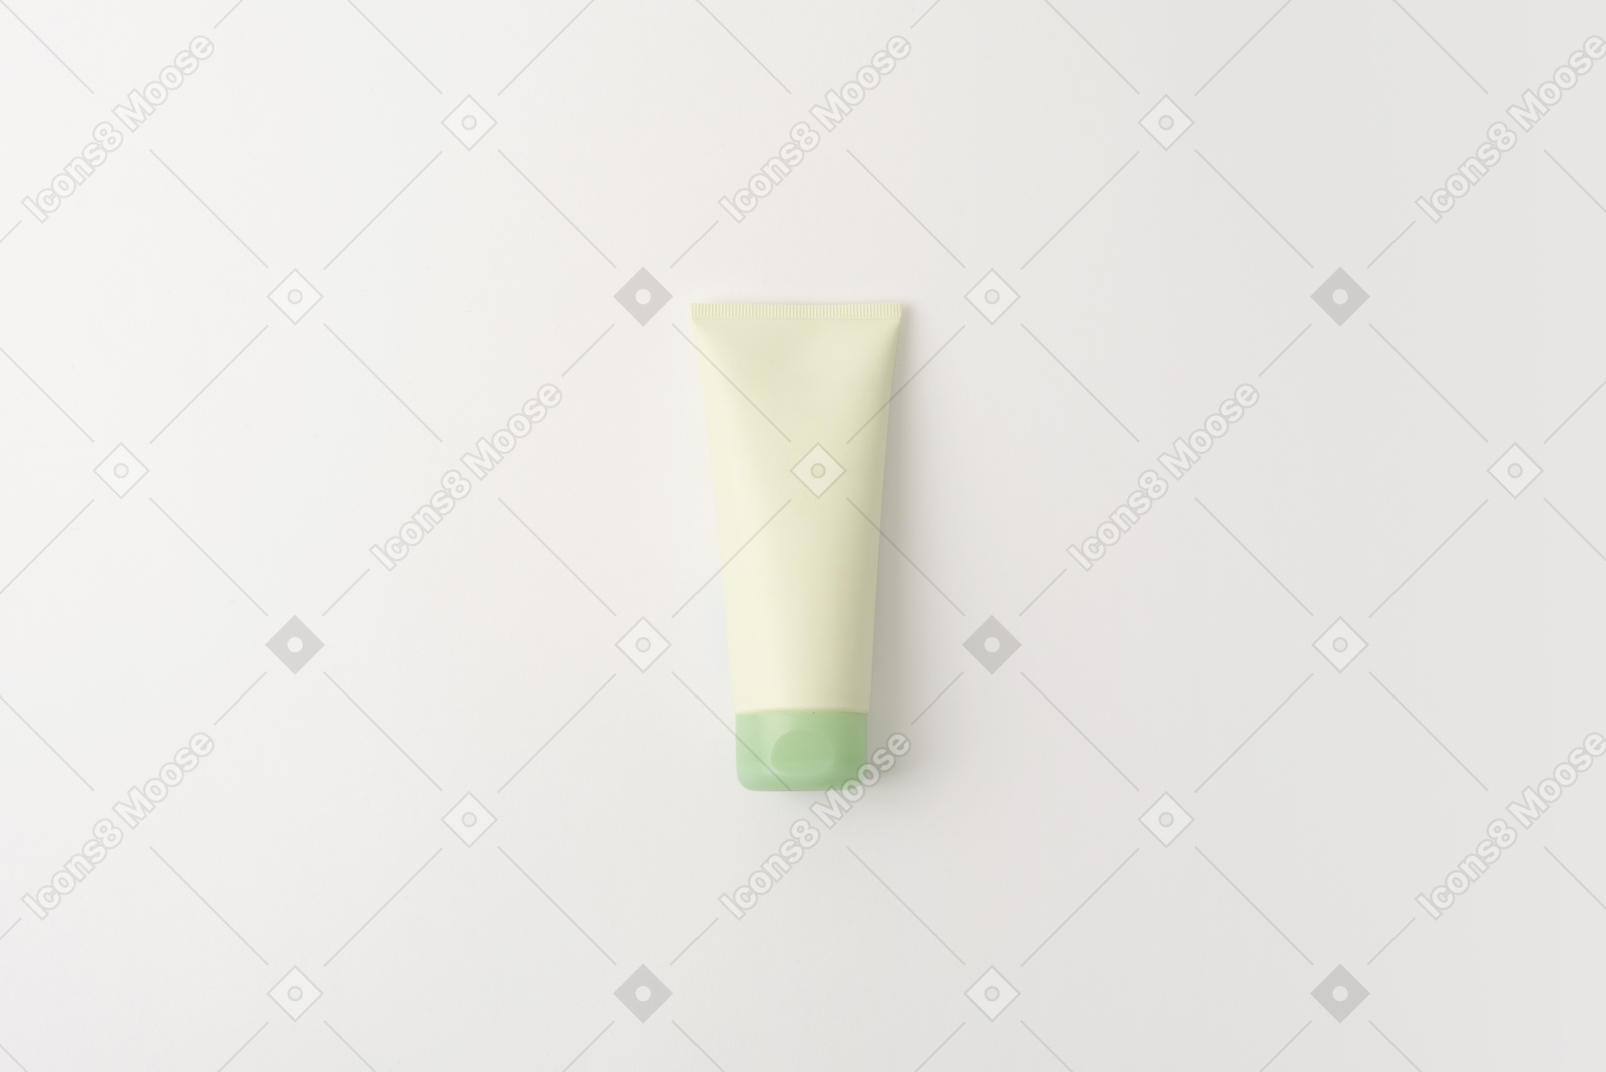 Hand cream tube mockup